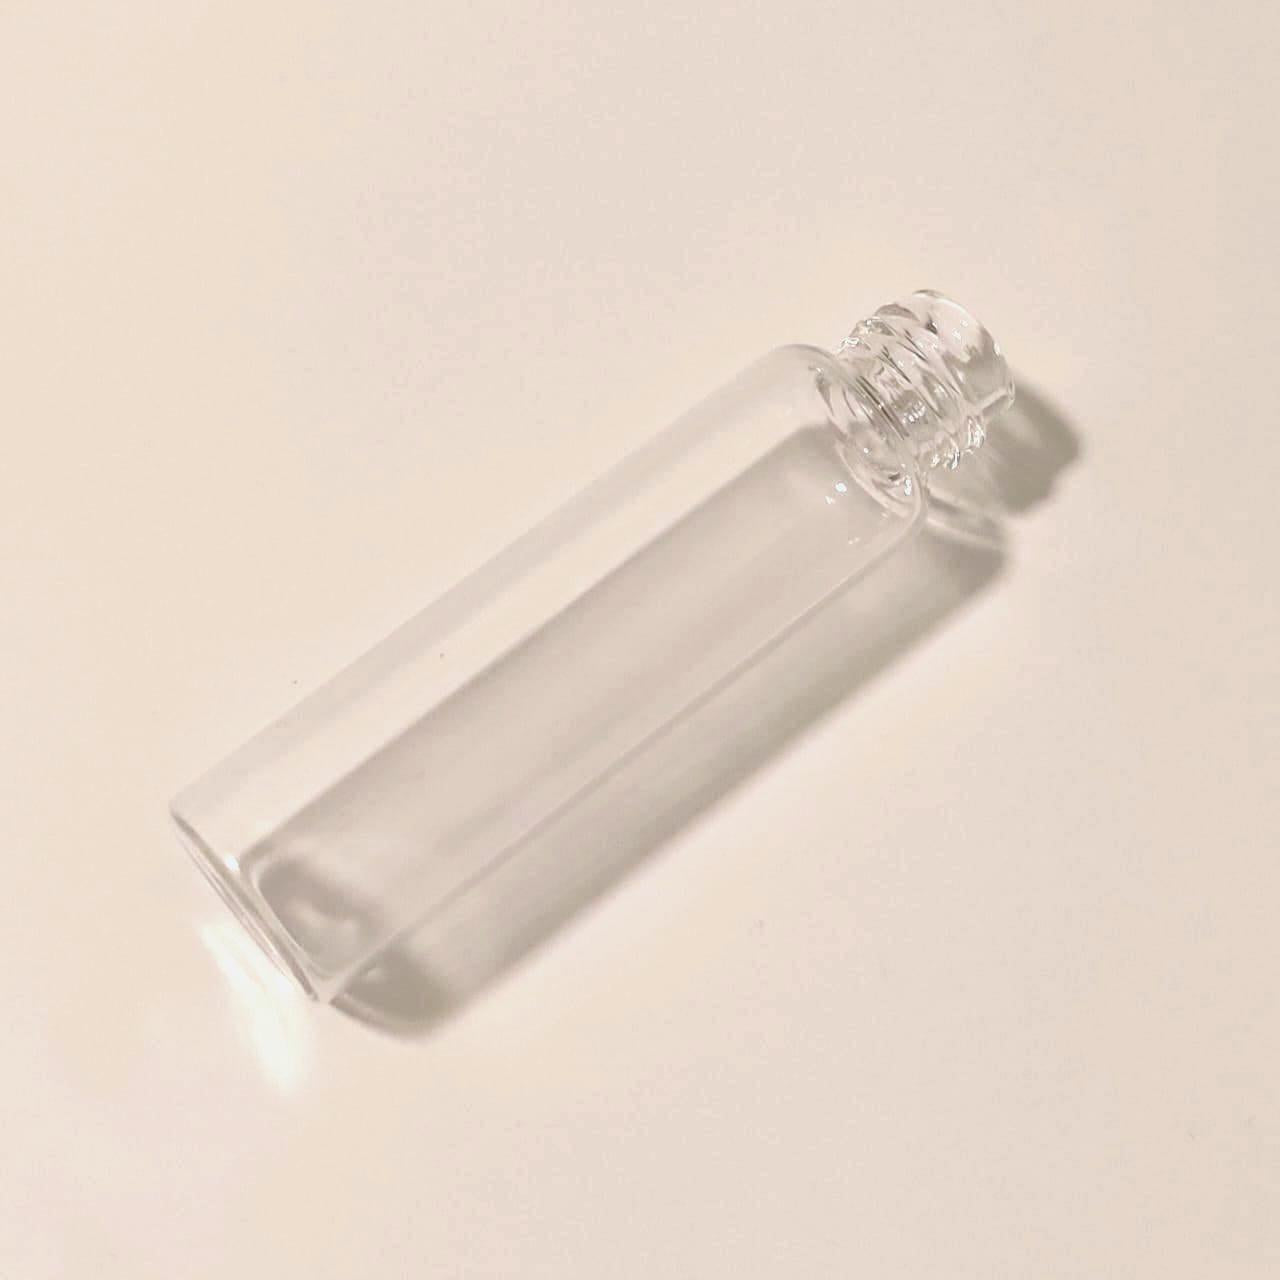 Wholesale Fragrance Bottles - Mini Perfume Bottles